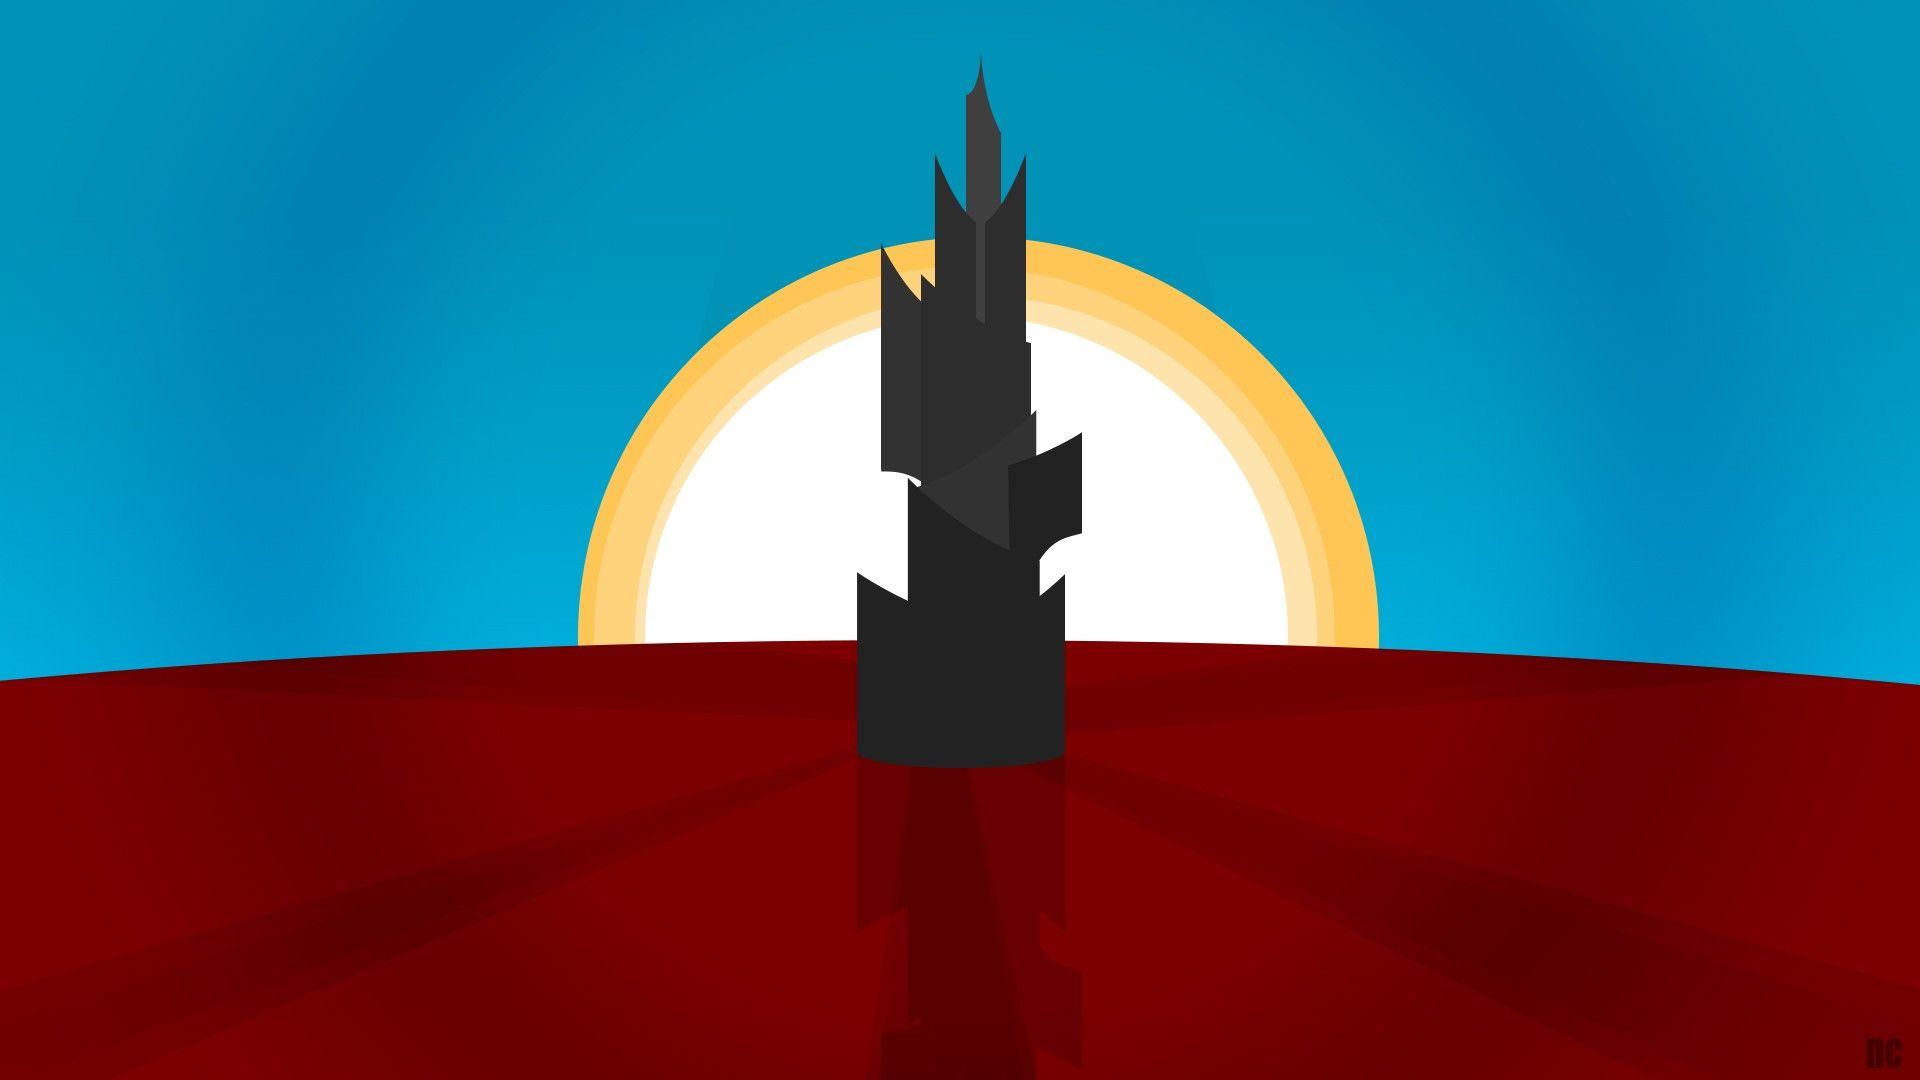 Minimalist desktop wallpapers I made, the Dark Tower. : TheDarkTower